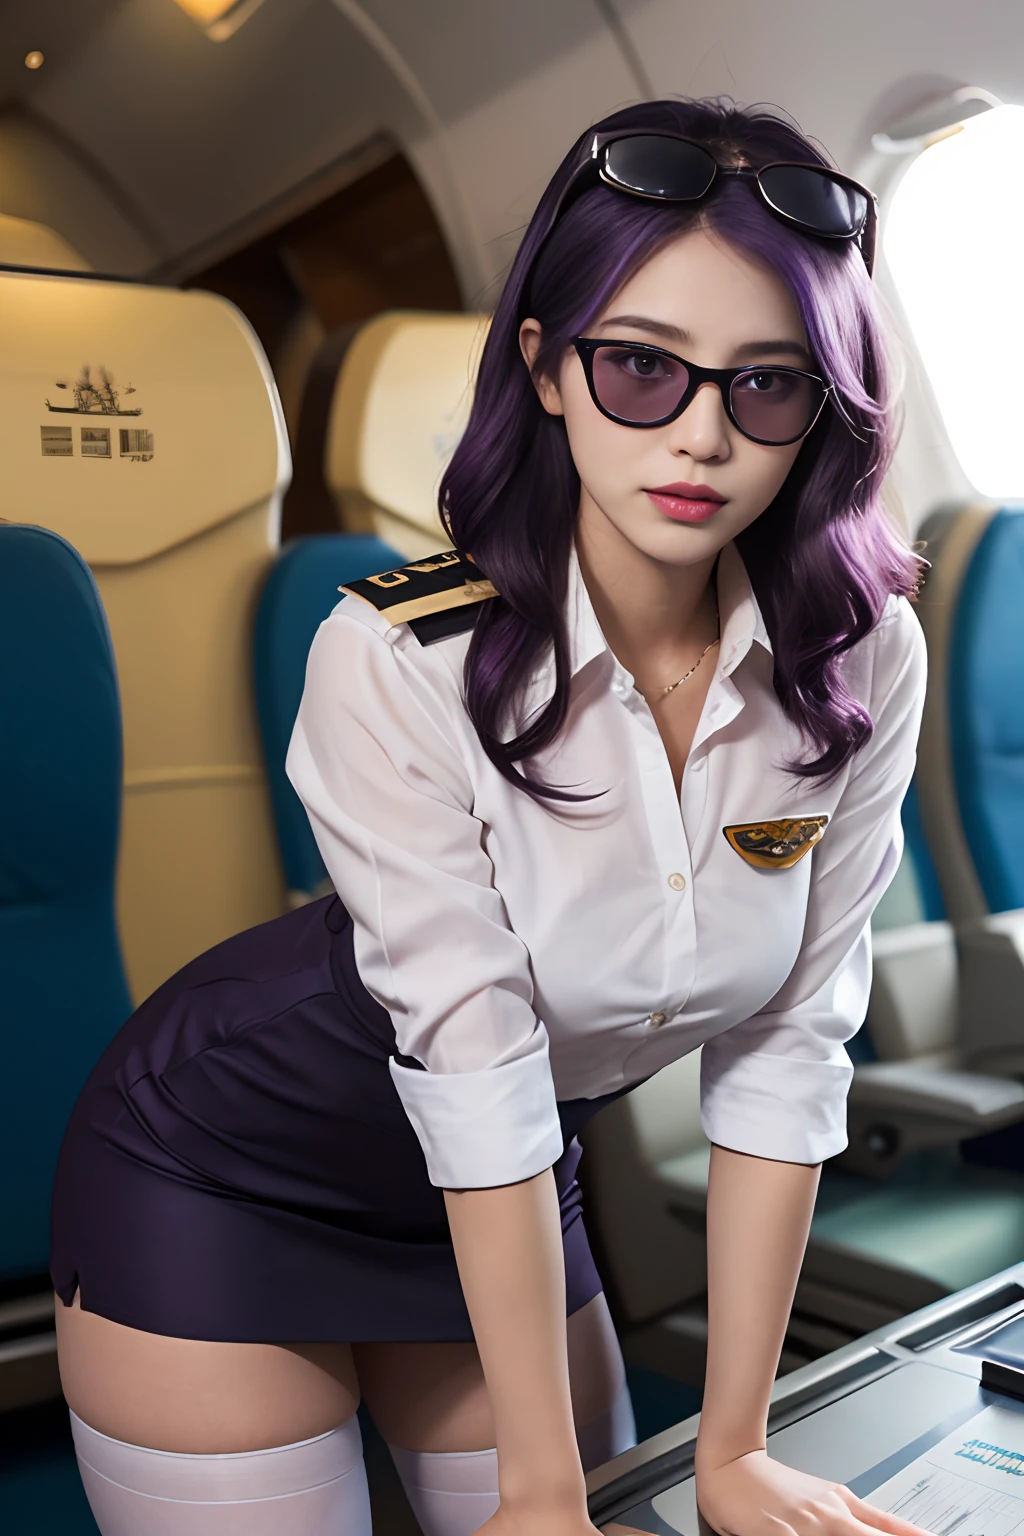 (最好的质量: 1.1), (实际的: 1.1), (摄影: 1.1), (非常详细: 1.1), (1女人), 民航飞行员, 燕麦,白衬衫,短裙,黑色丝袜,弯下腰,在飞机上,卡夫卡HKS,香港,紫色的眼睛, 紫色头发, 头上戴眼镜, 太阳镜,